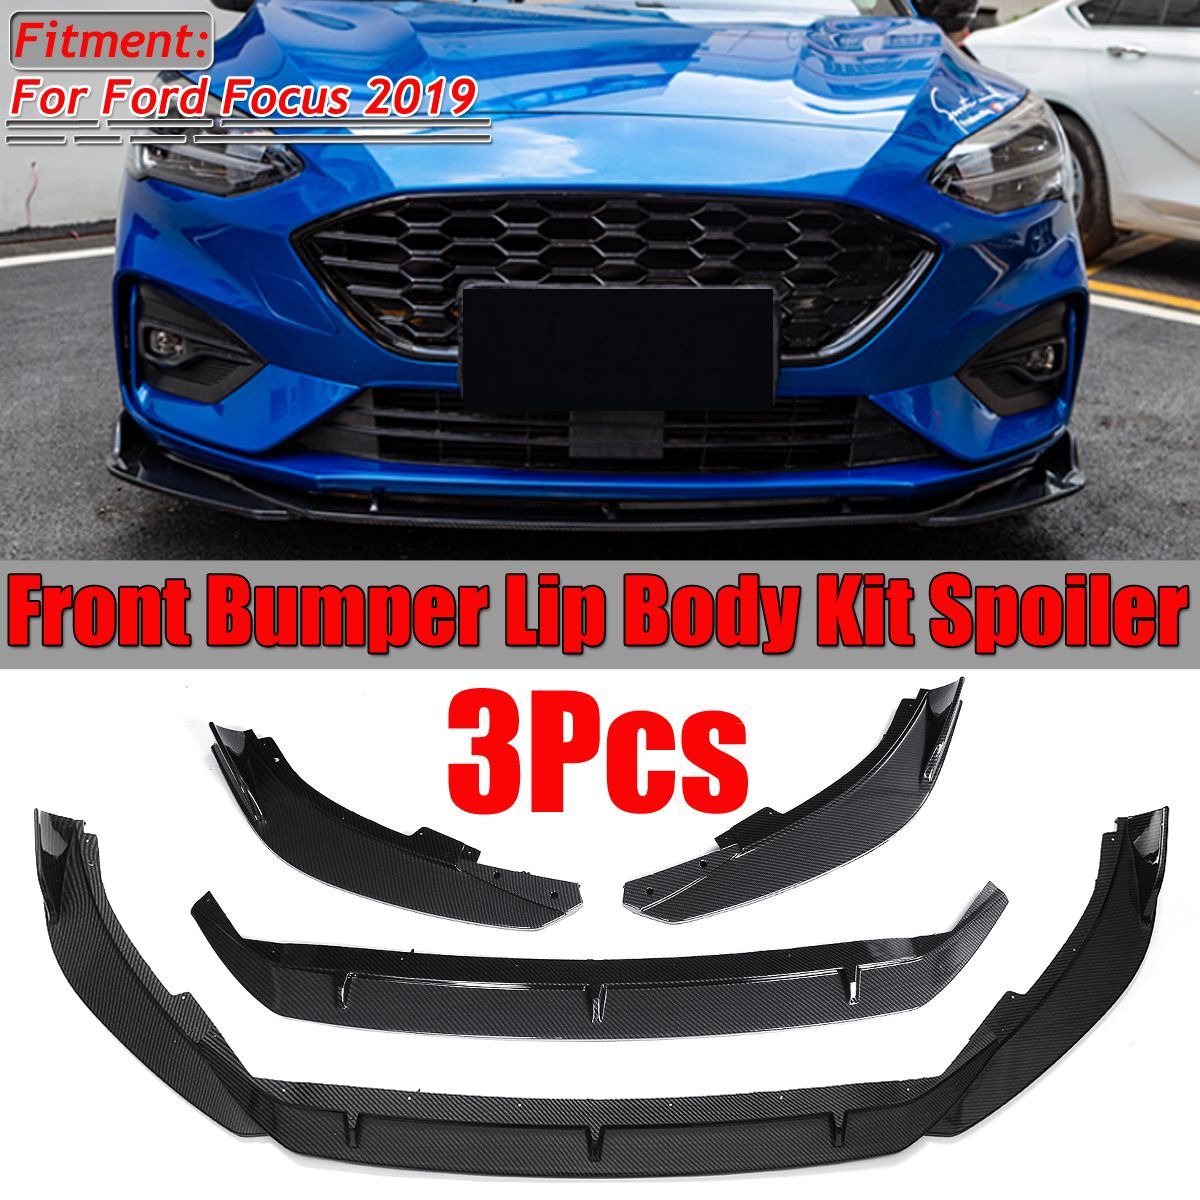 3PCS-Carbon-Fiber-Style-Front-Bumper-Lip-Spoiler-Cover-Trim-For-Ford-Focus-2019-1598707